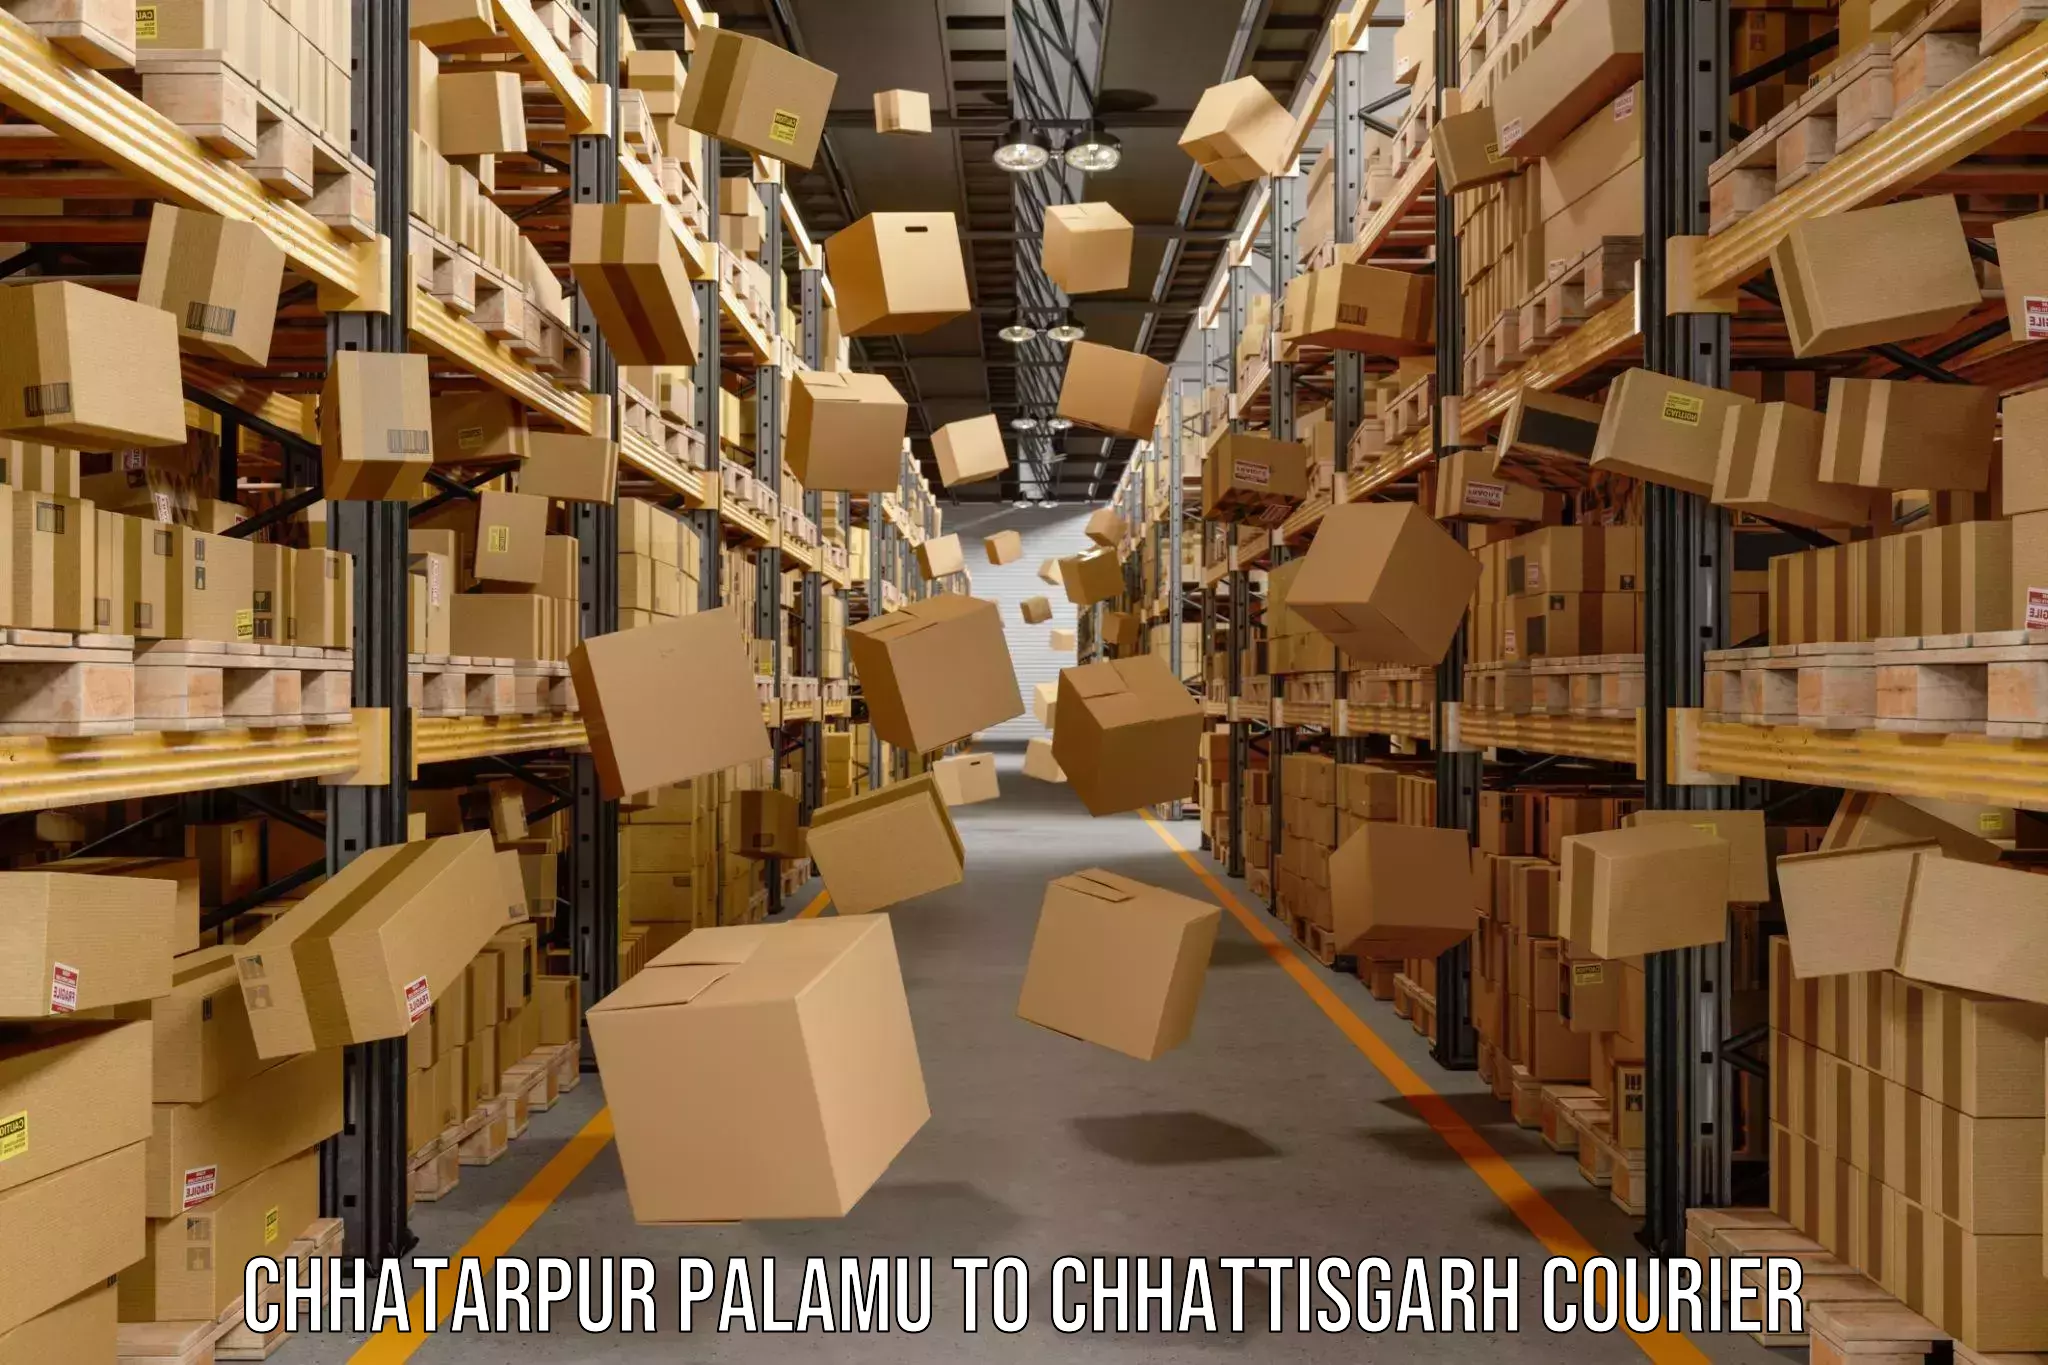 Multi-service courier options Chhatarpur Palamu to Jaijaipur